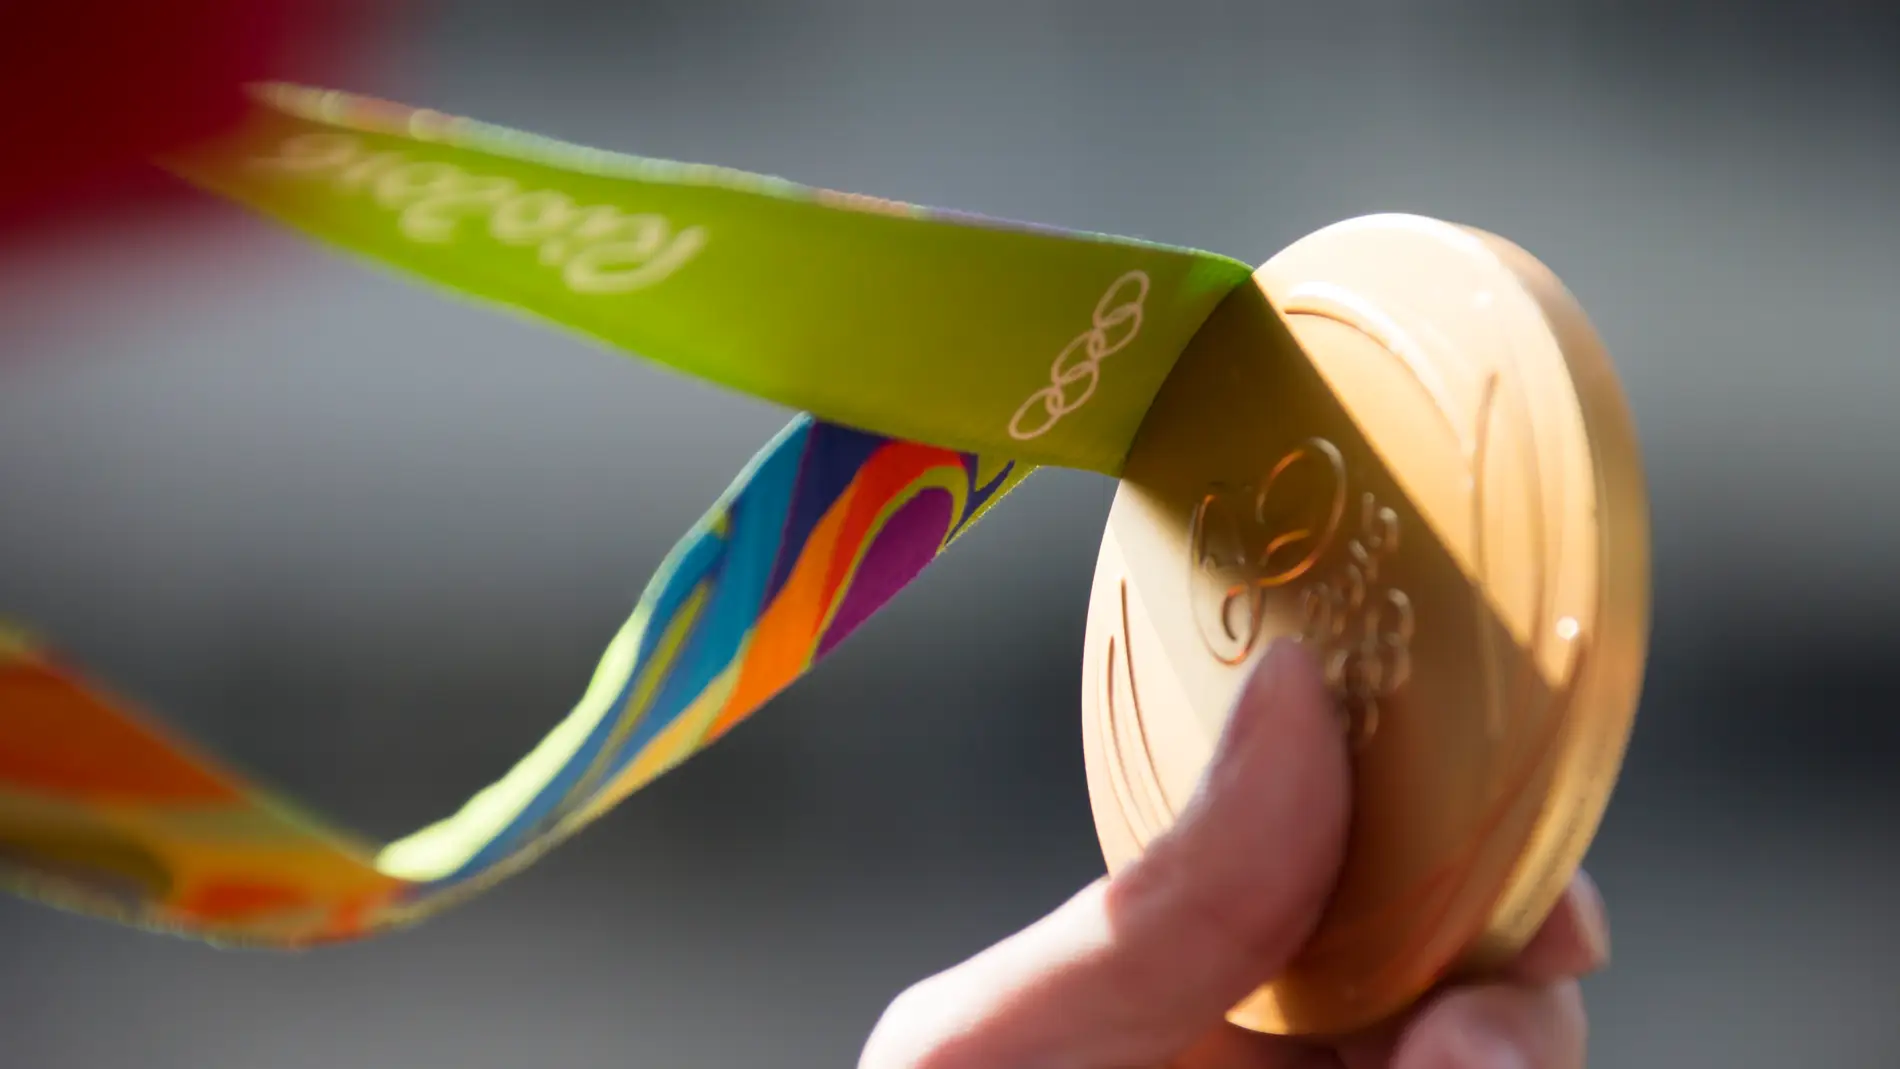 Medalla de oro entregada en los Juegos Olímpicos de Río